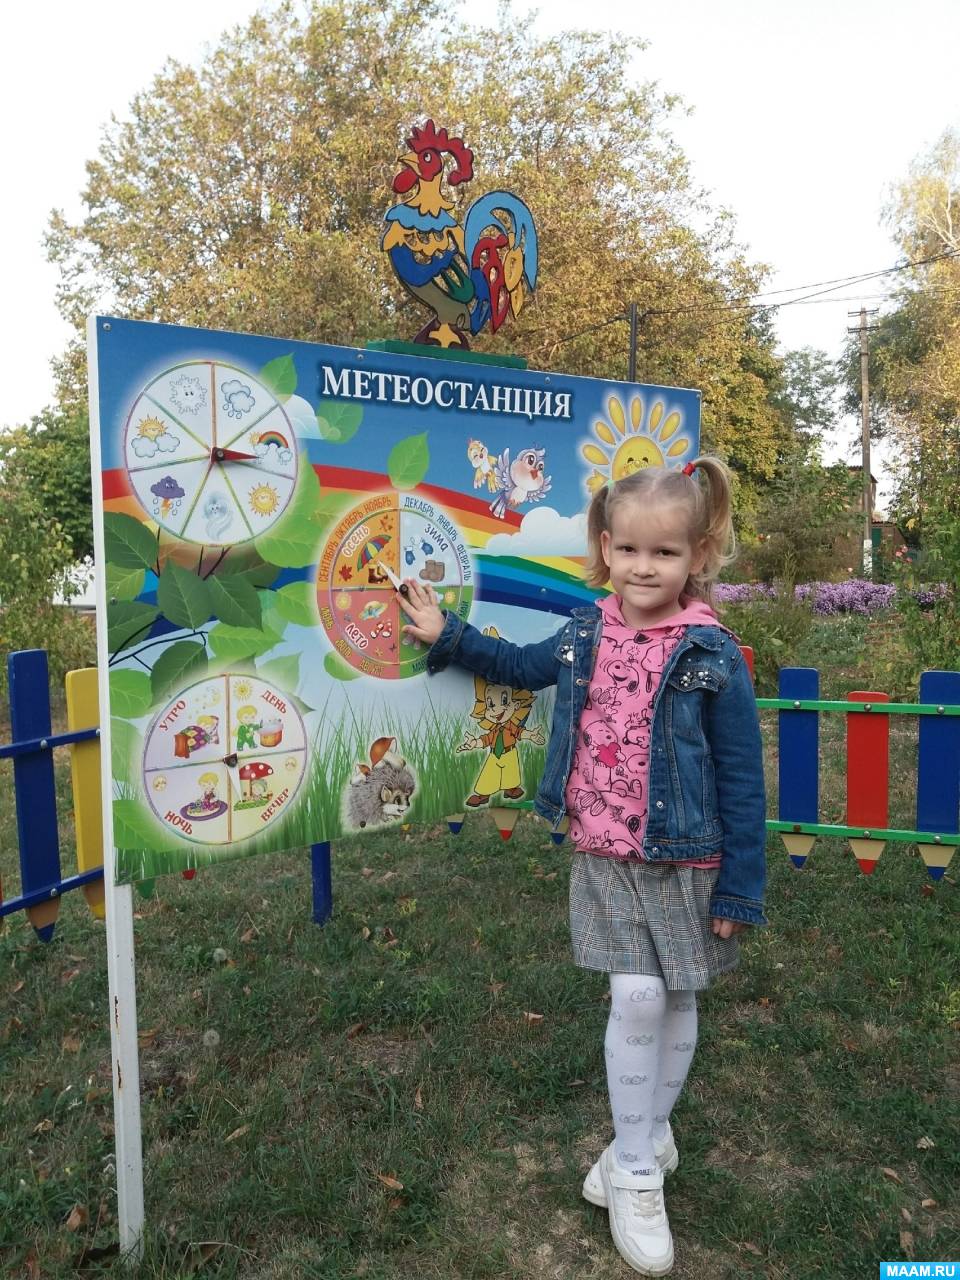 Метеостанция (метеоплощадка) для детского сада